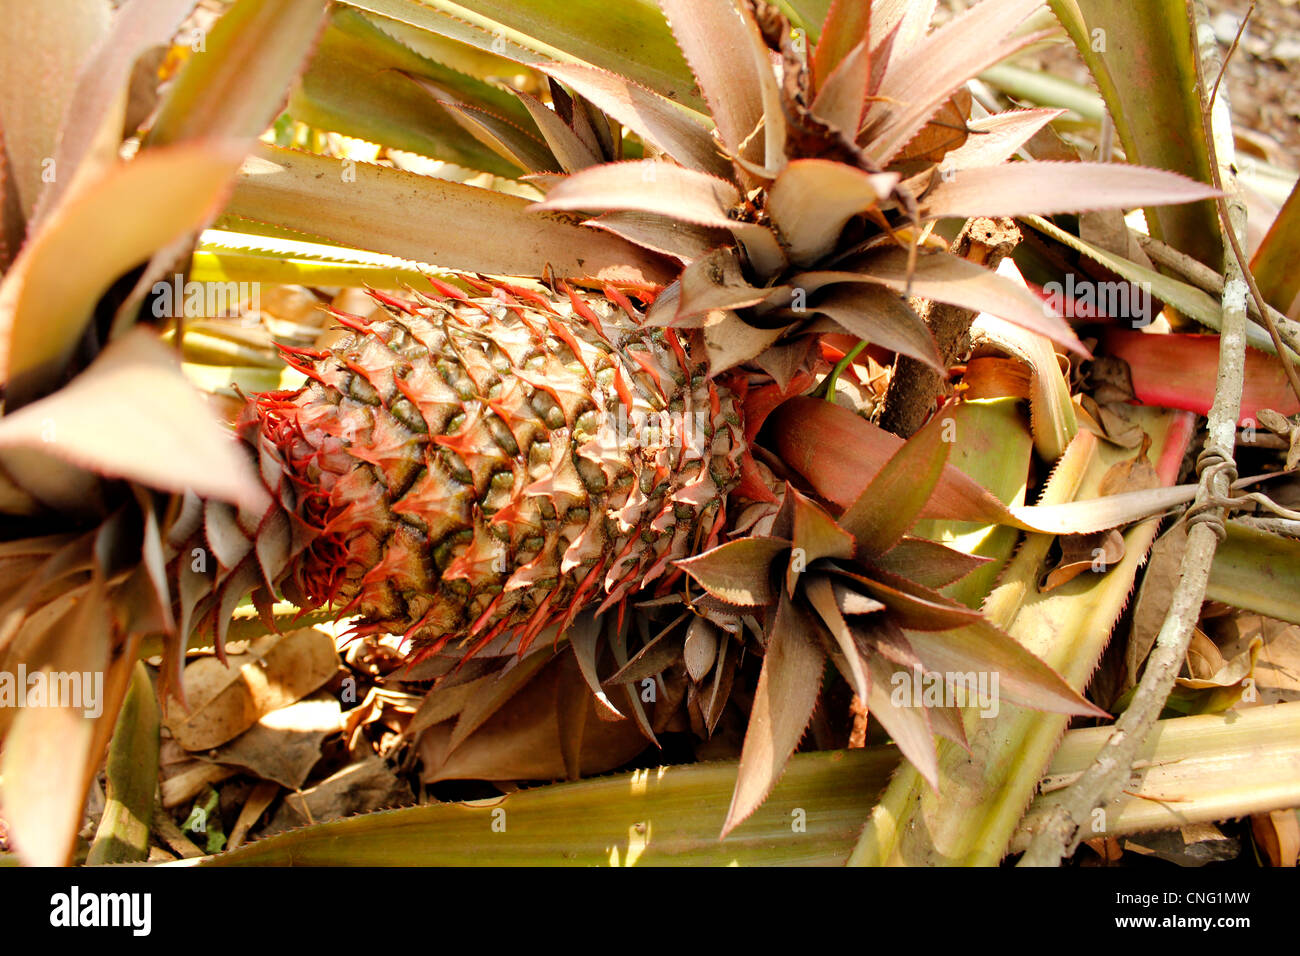 pineapple plant Stock Photo